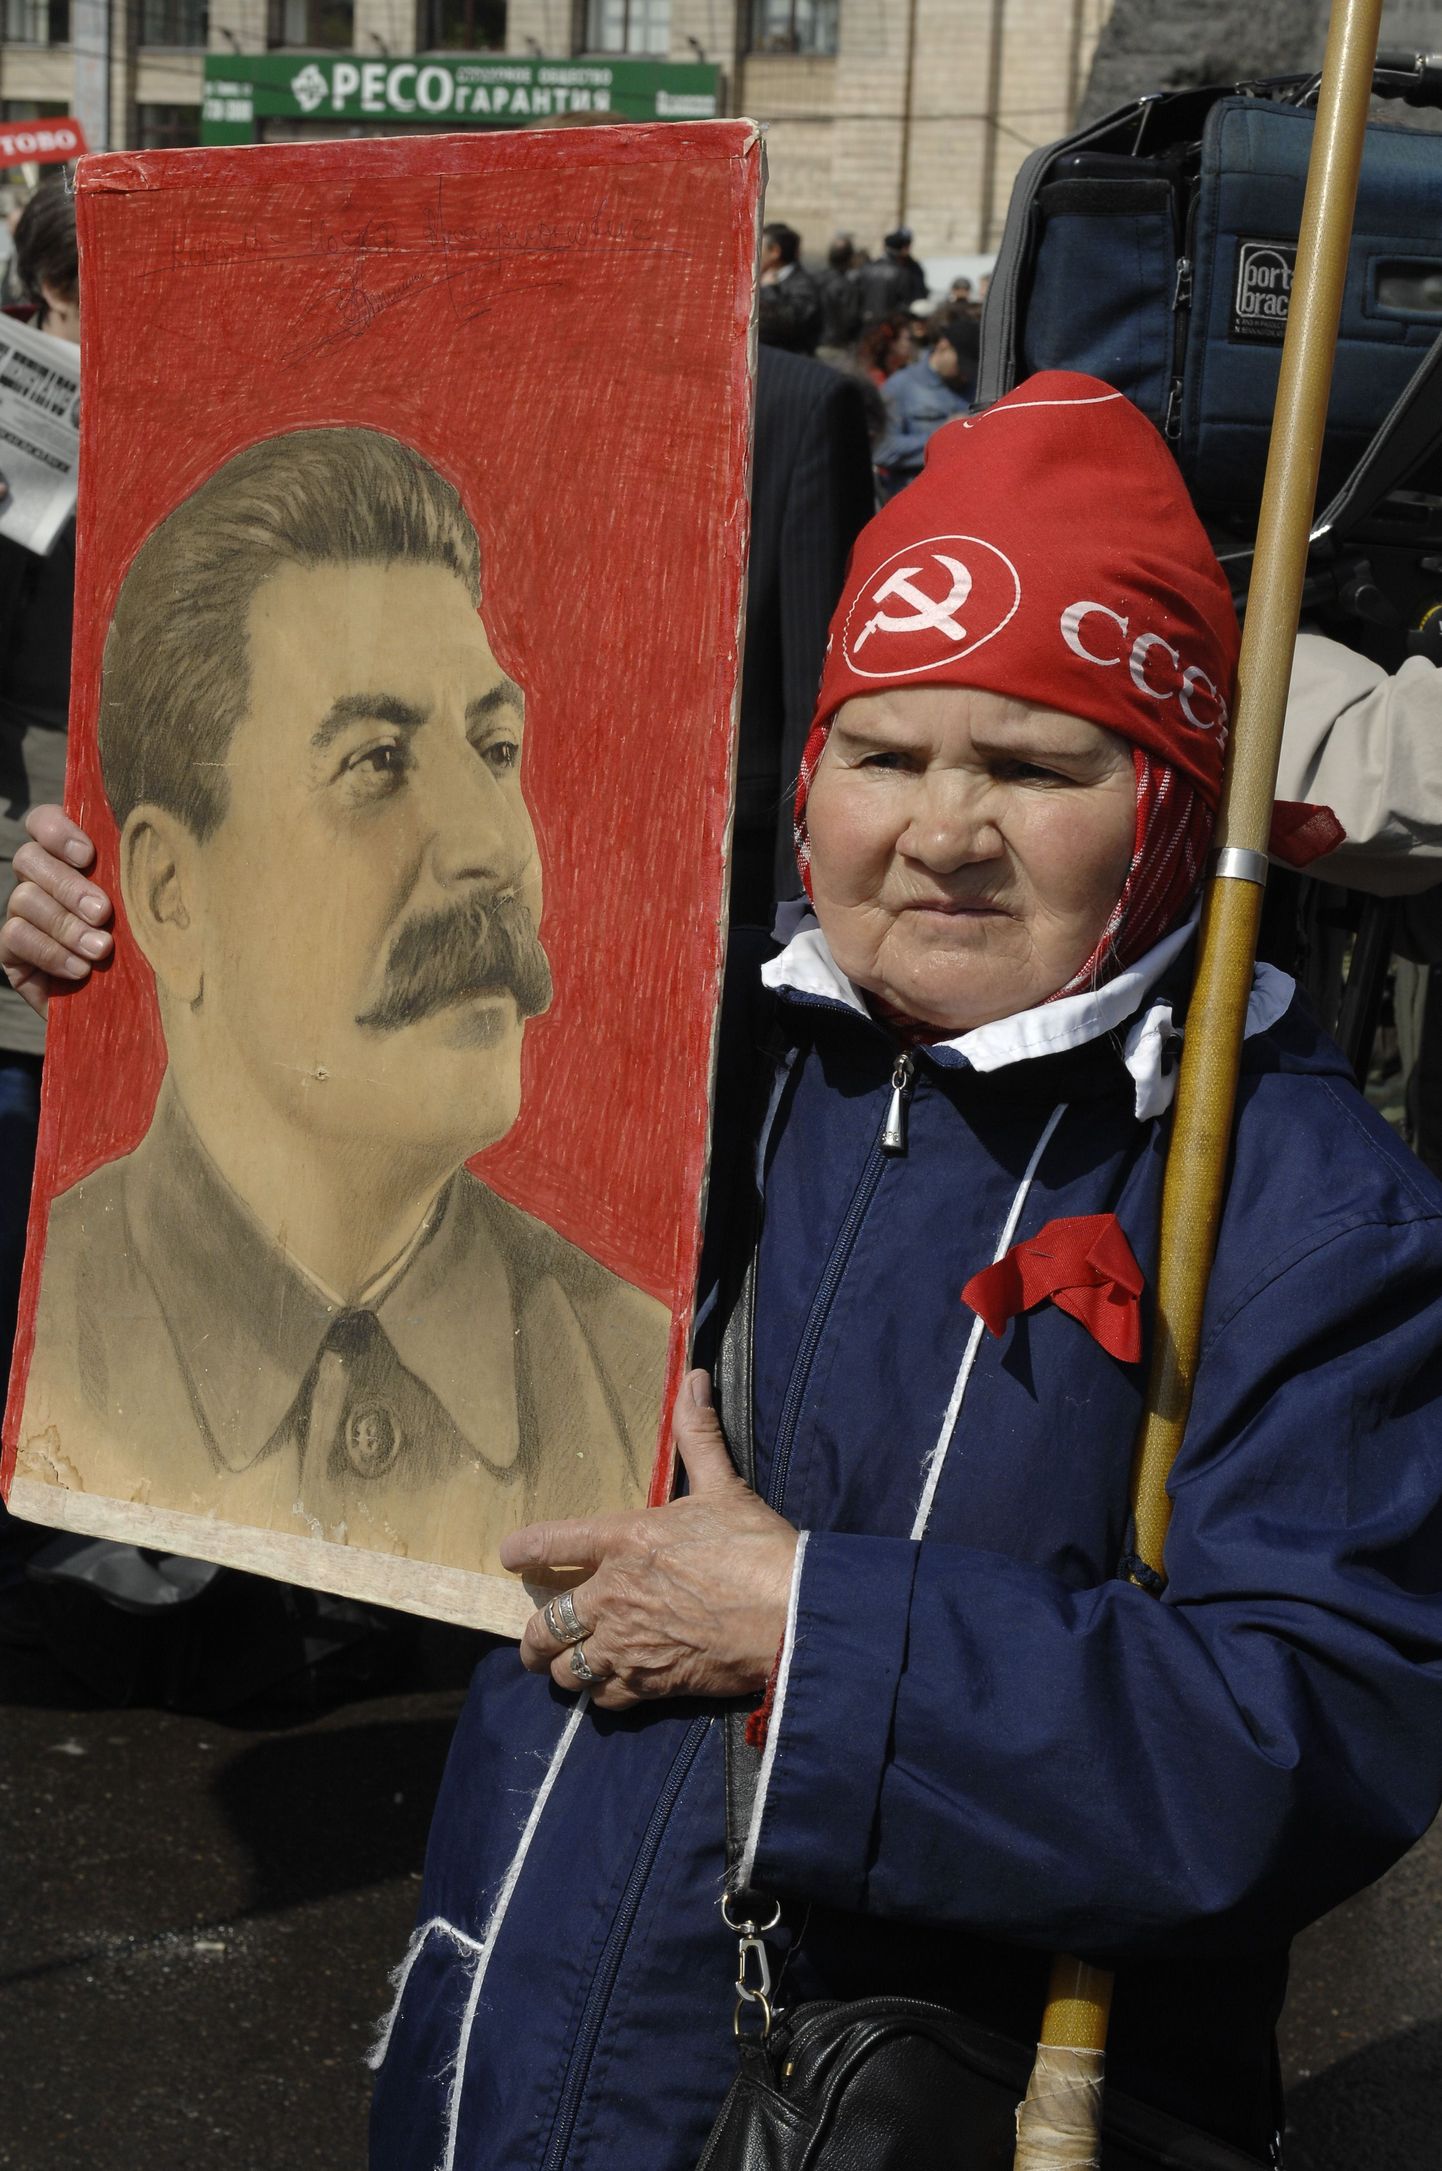 Vene naine kandmas Stalini portreed kommunistliku partei meeleavaldusel Moskvas.